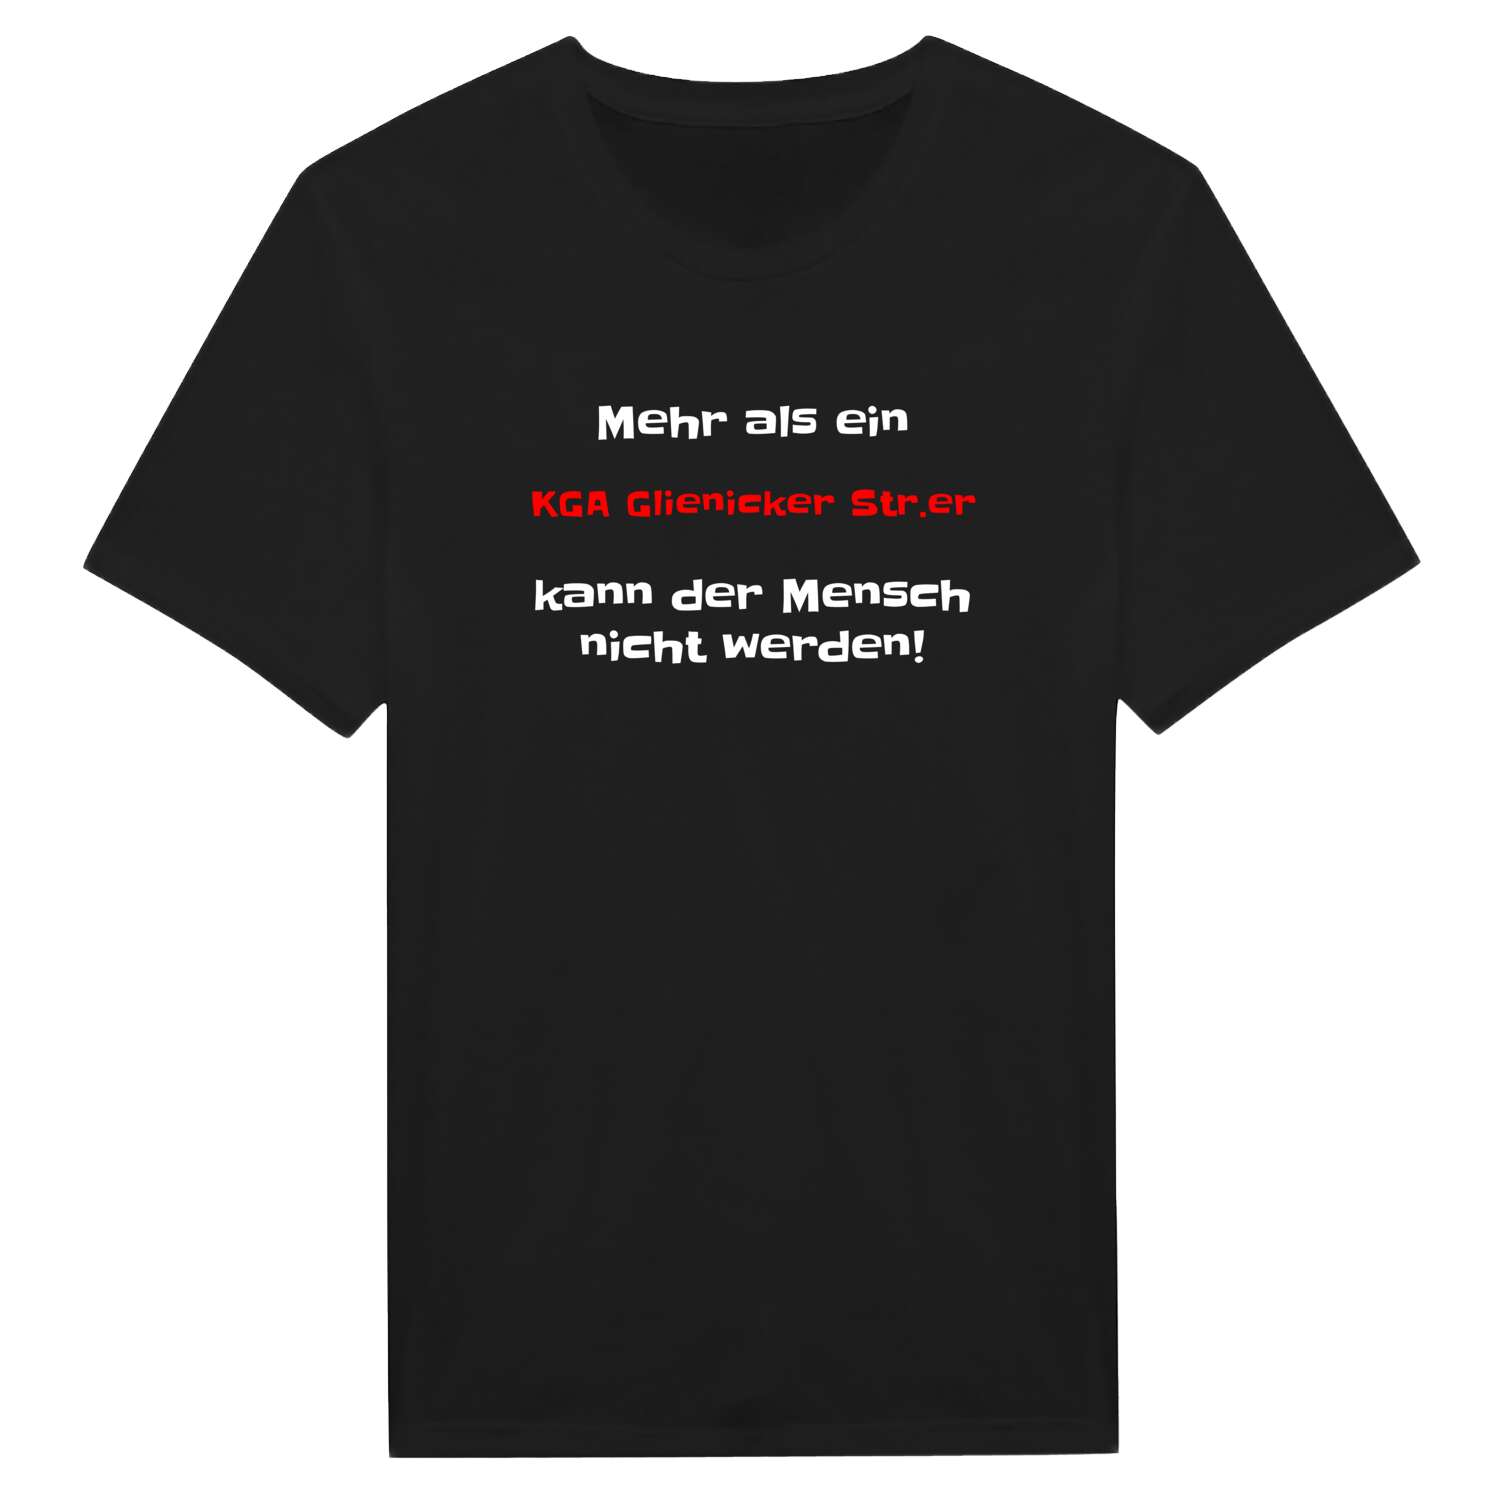 KGA Glienicker Str. T-Shirt »Mehr als ein«